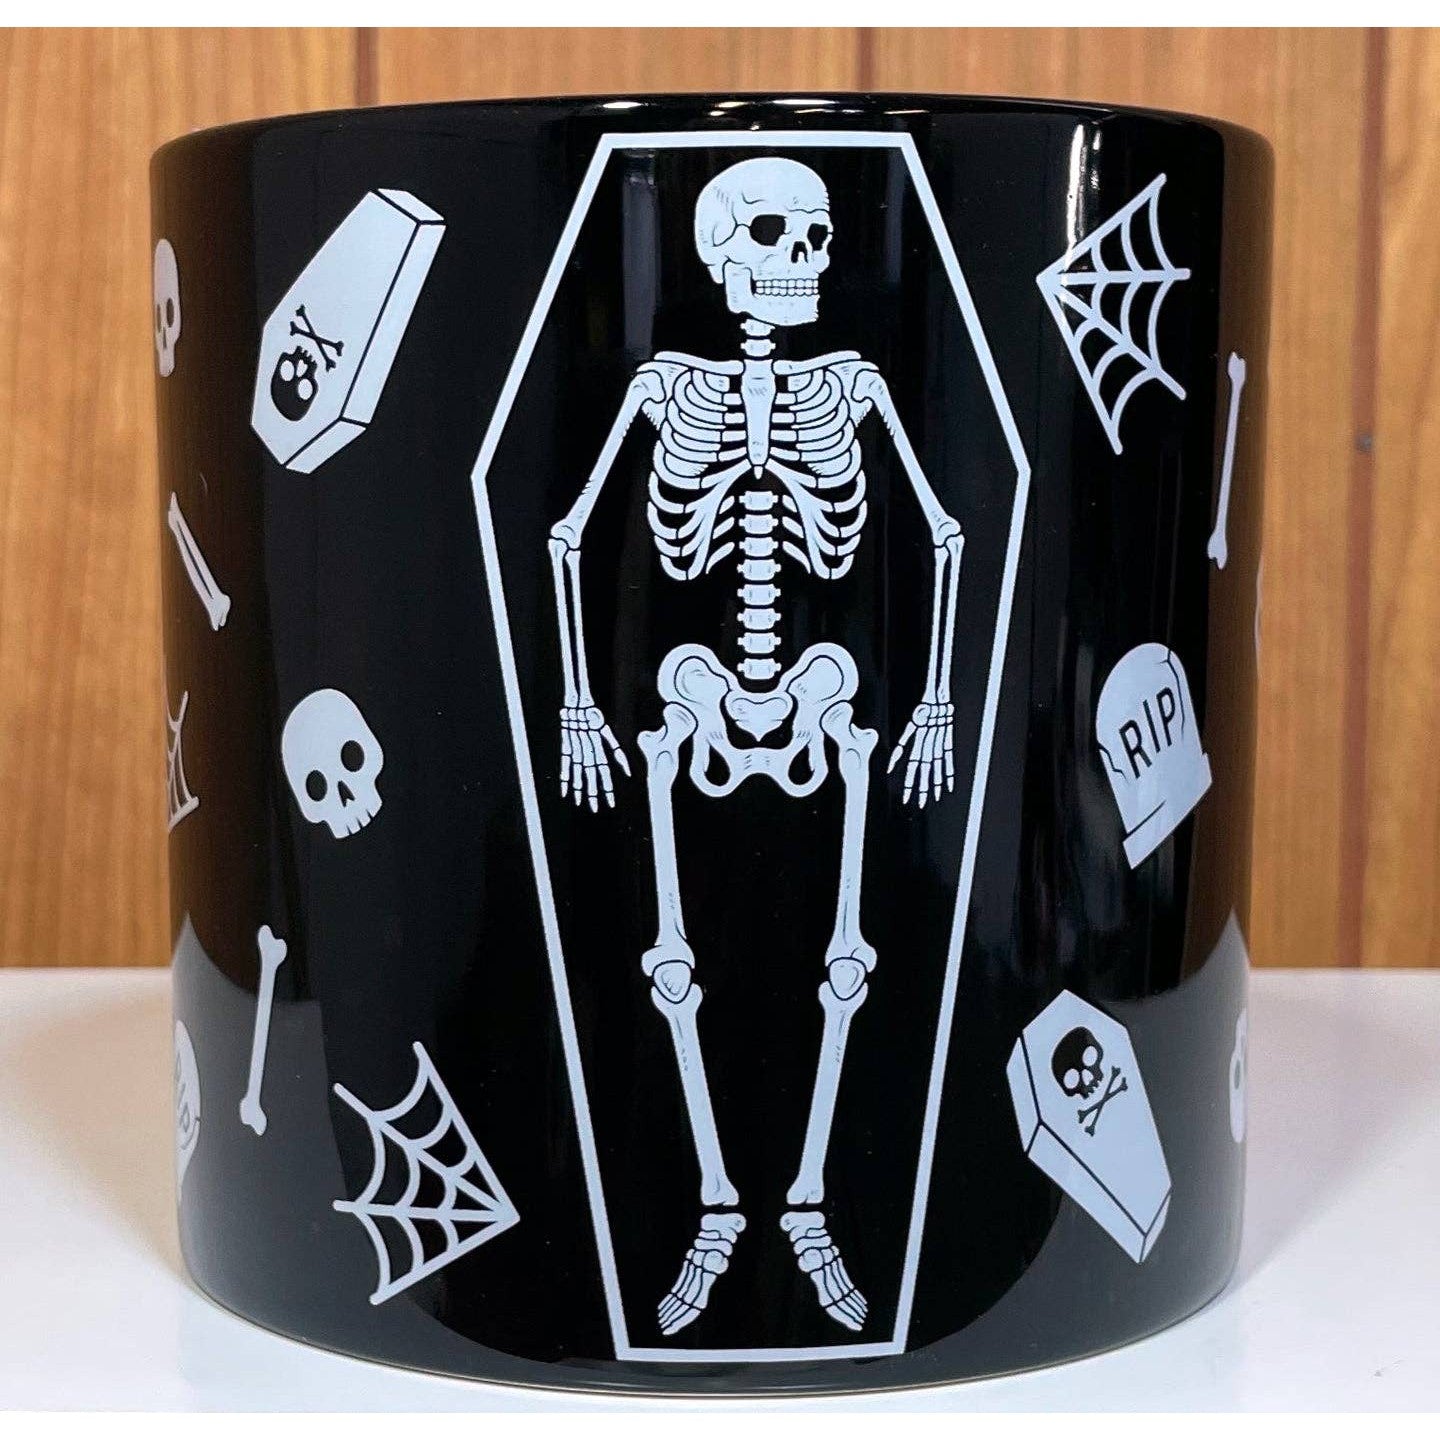 Skeleton Spooky Ceramic Plant Container | Flower Succulents Planter Pot